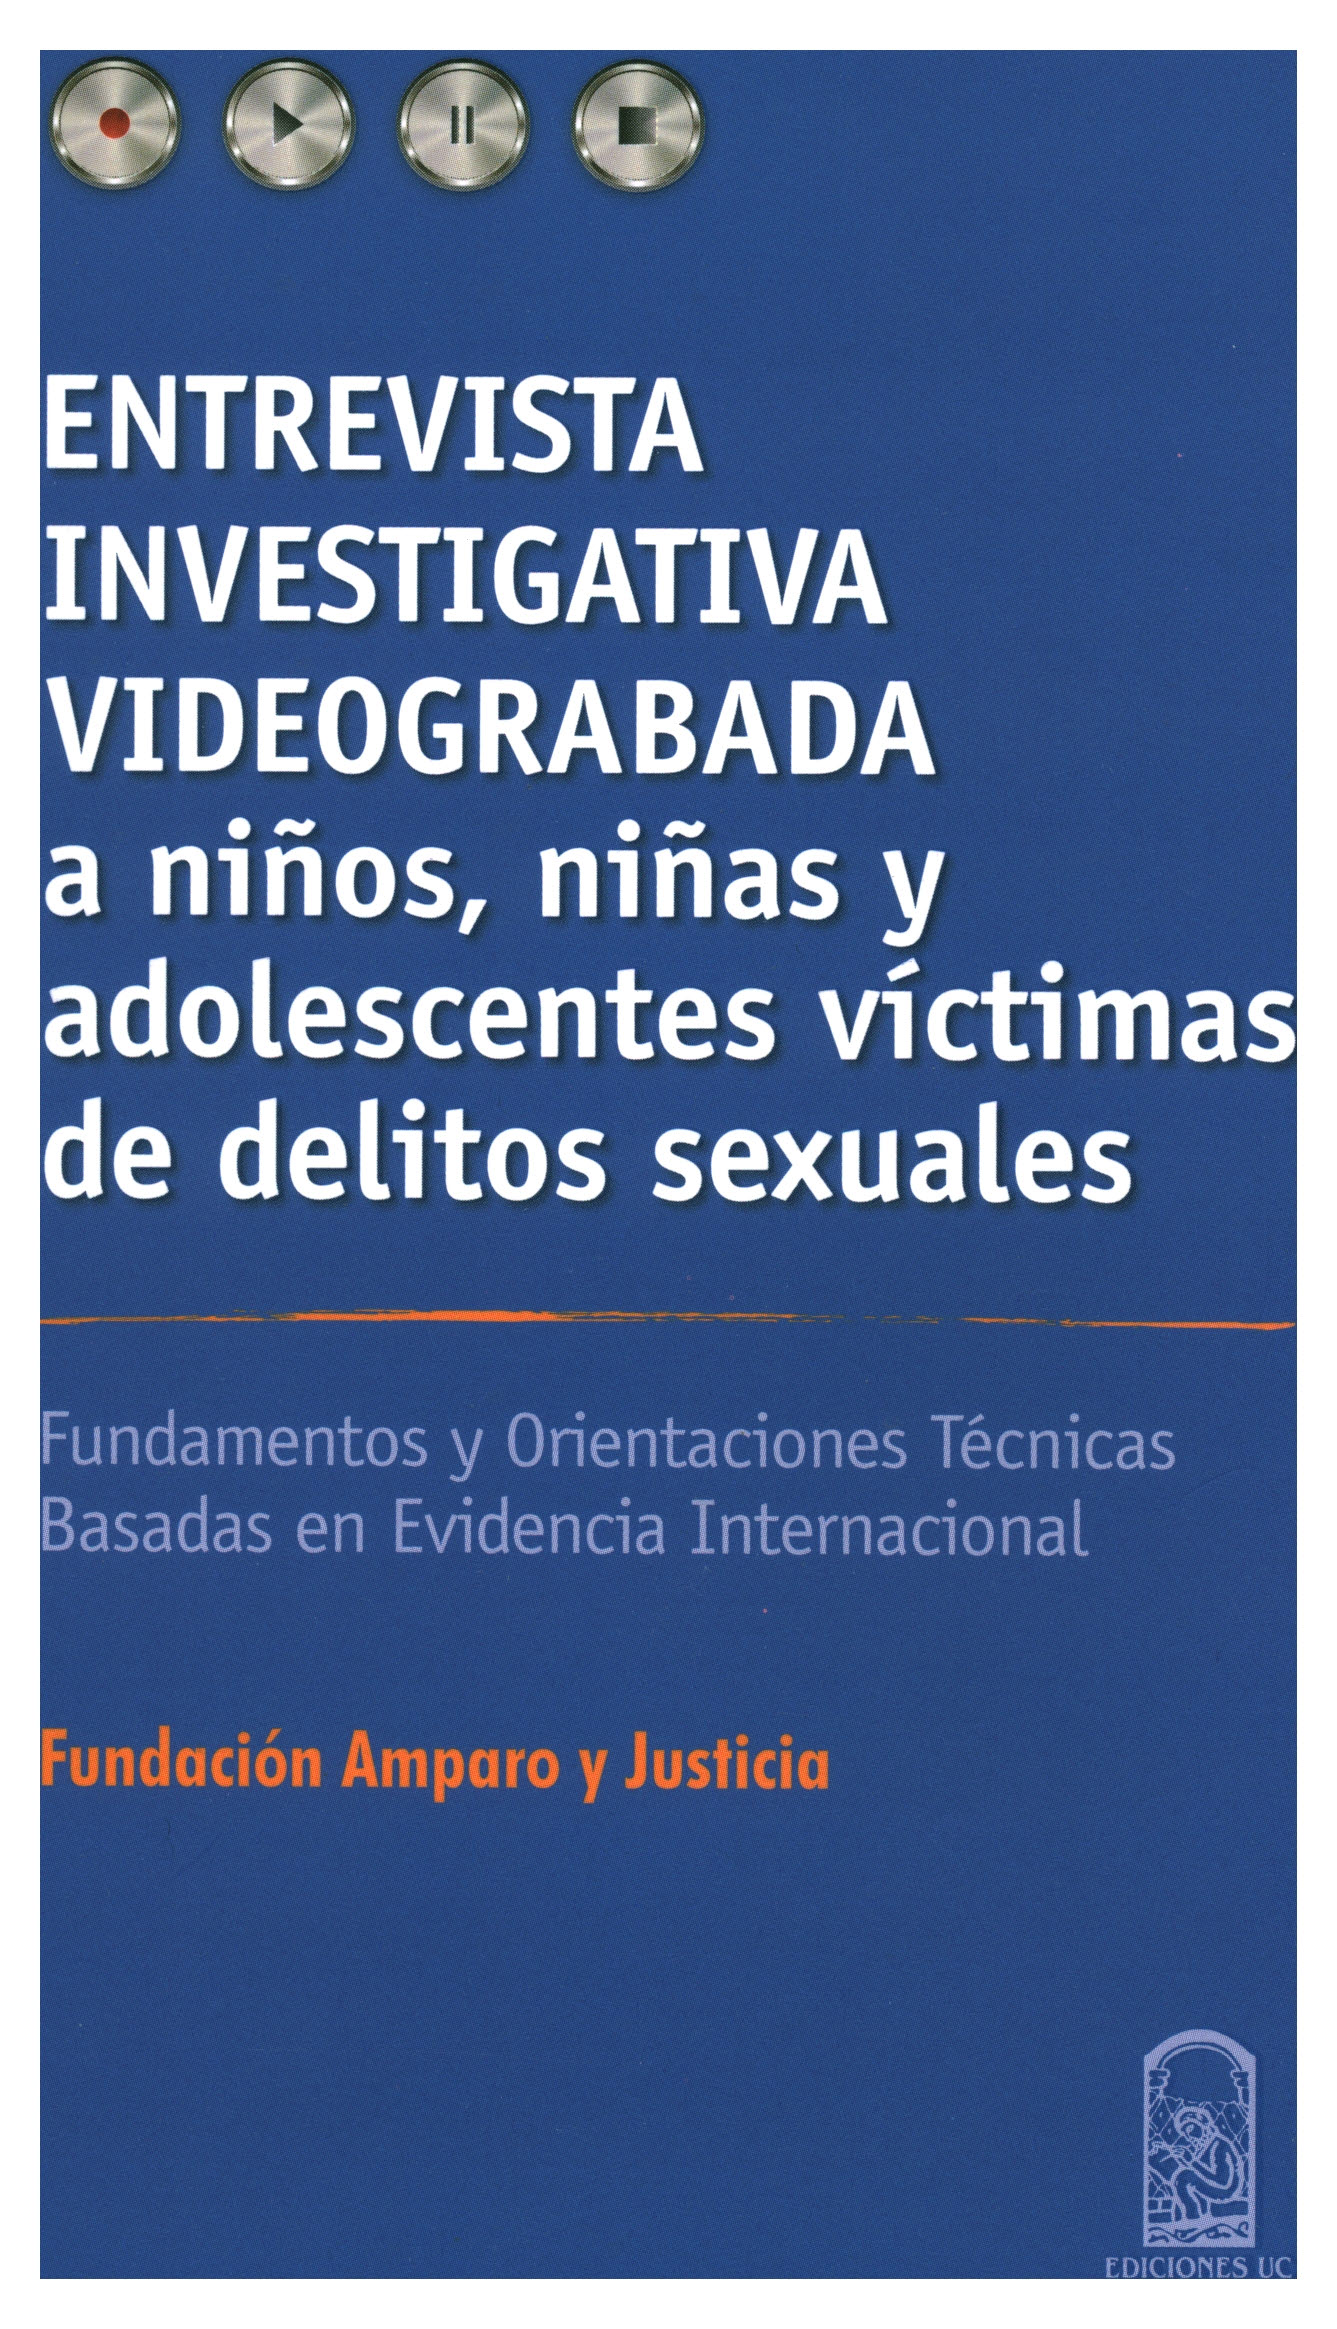 Entrevista investigativa videograbada a niños, niñas y adolescentes víctimas de delitos sexuales. fundamentos y orientaciones técnicas basadas en evidencia internacional